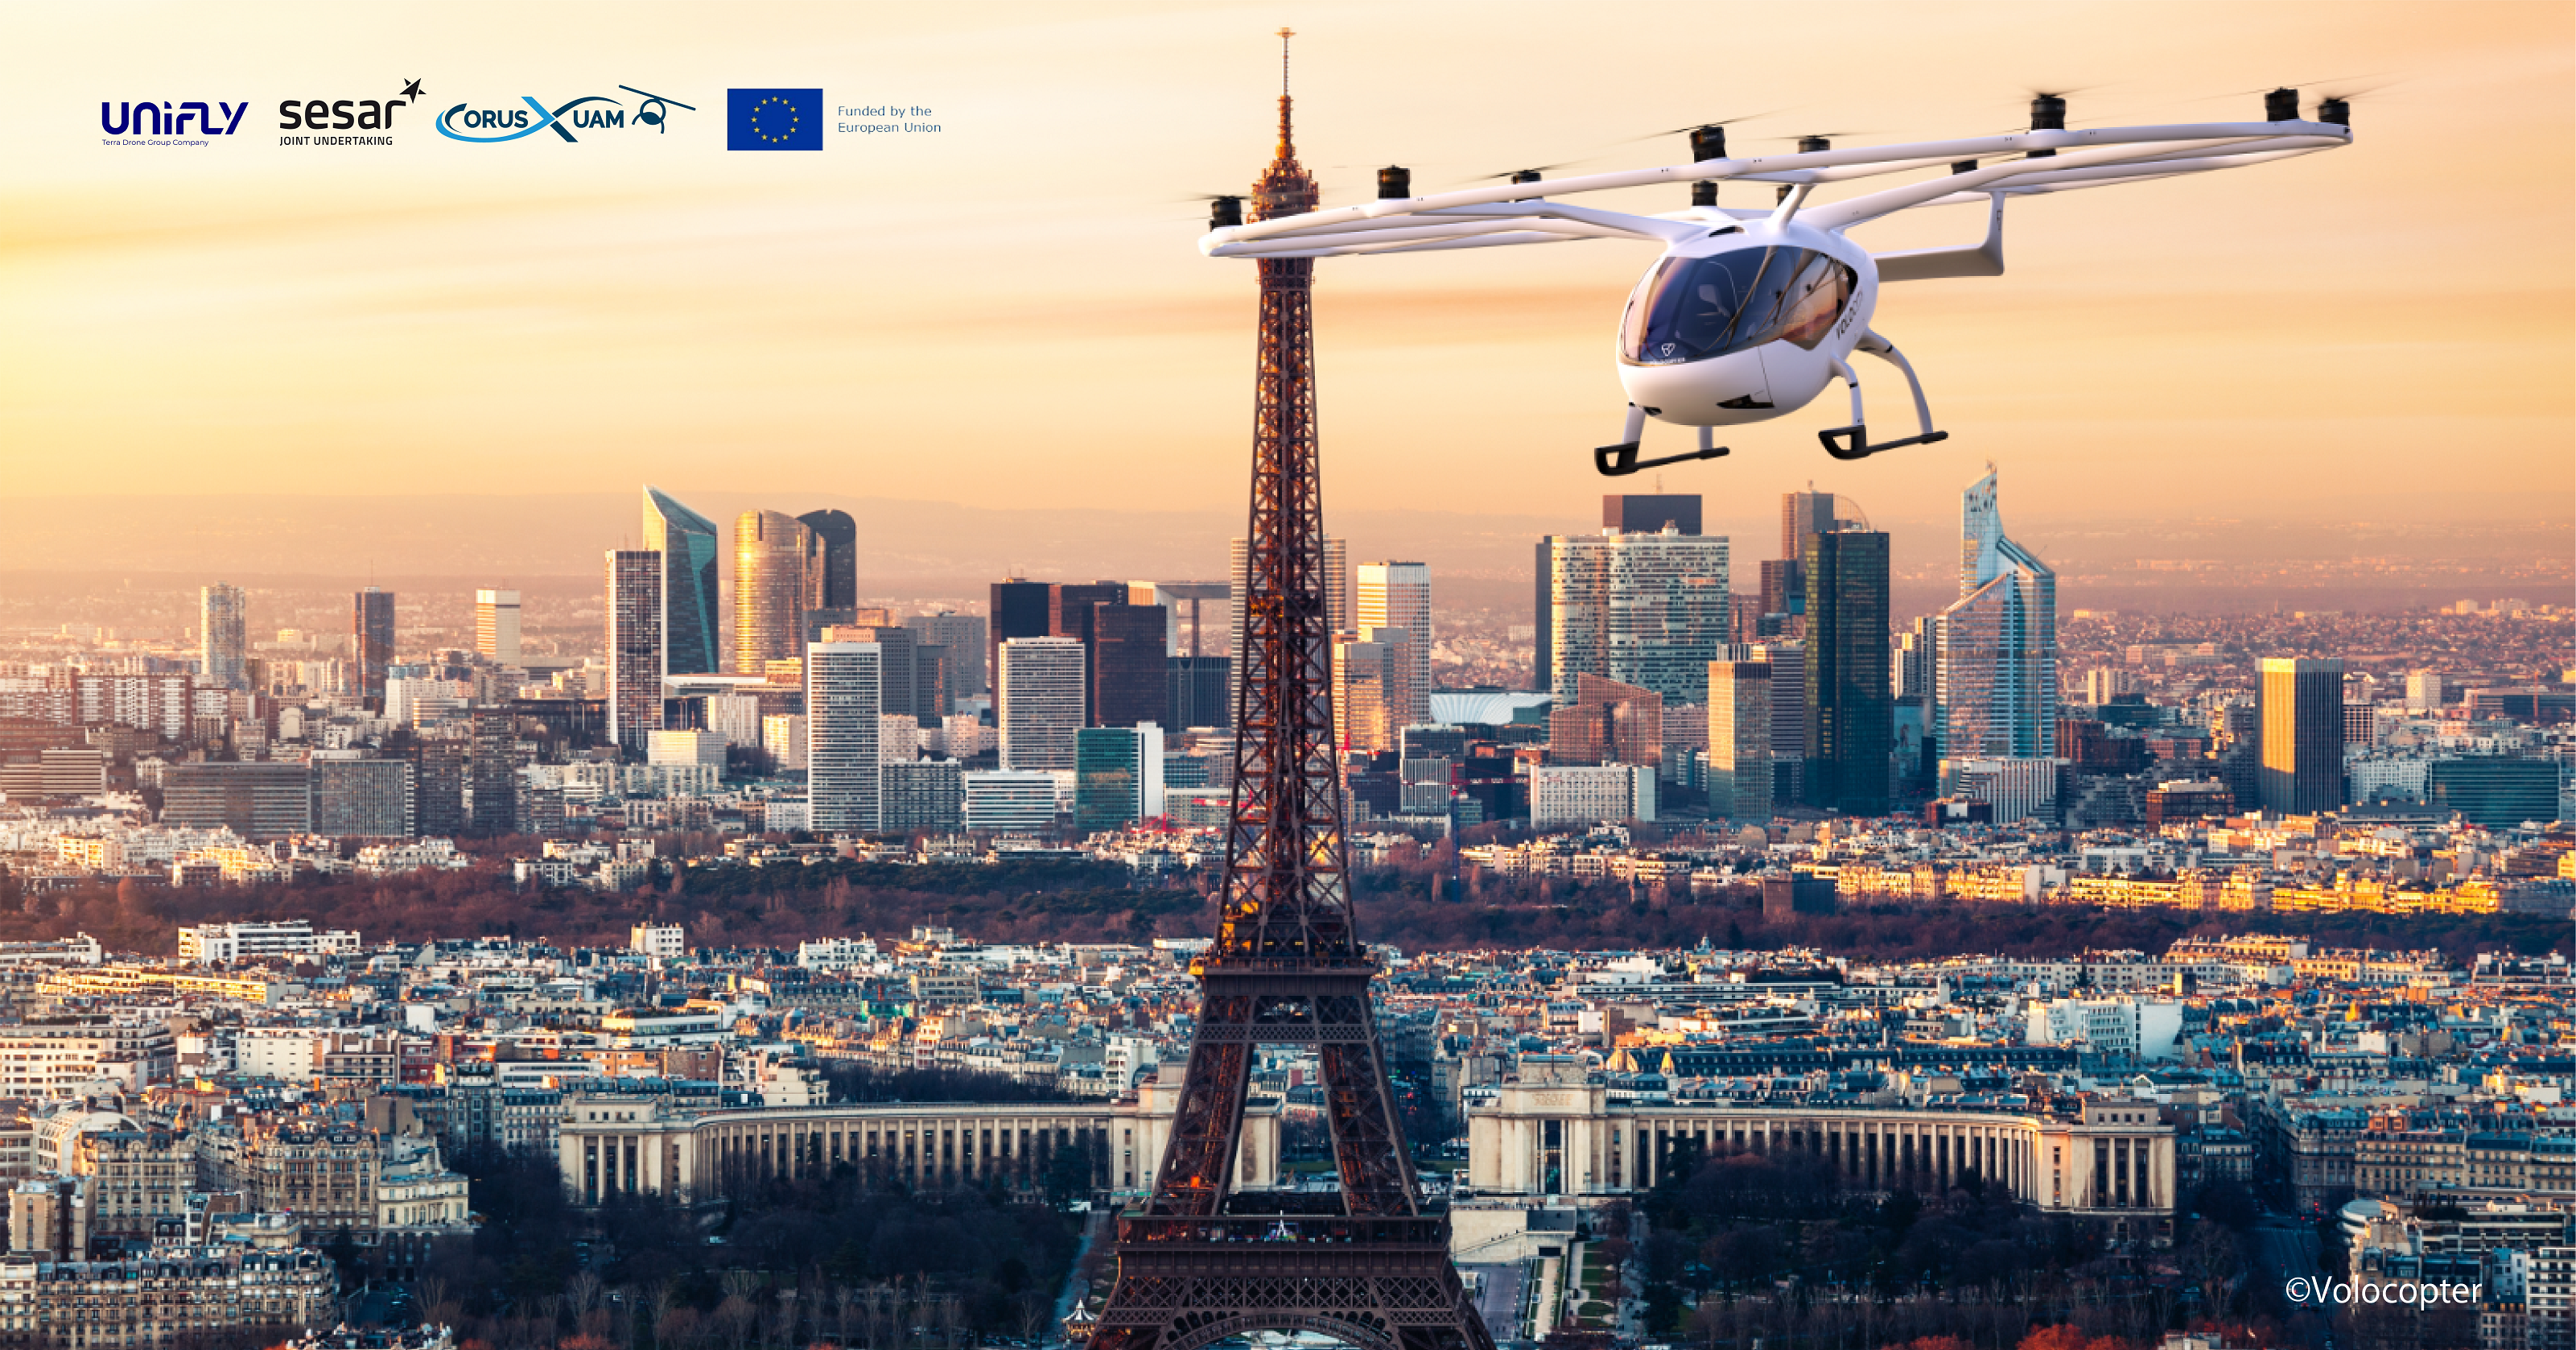 テラドローン子会社「Unifly」、CORUS-XUAMプロジェクトで都市部や空港周辺でのドローンや空飛ぶクルマの飛行実験に成功<br>U-space運用拡張により有人機の航空交通管理システムとの統合を実現し欧州における次世代エアモビリティの普及を目指す